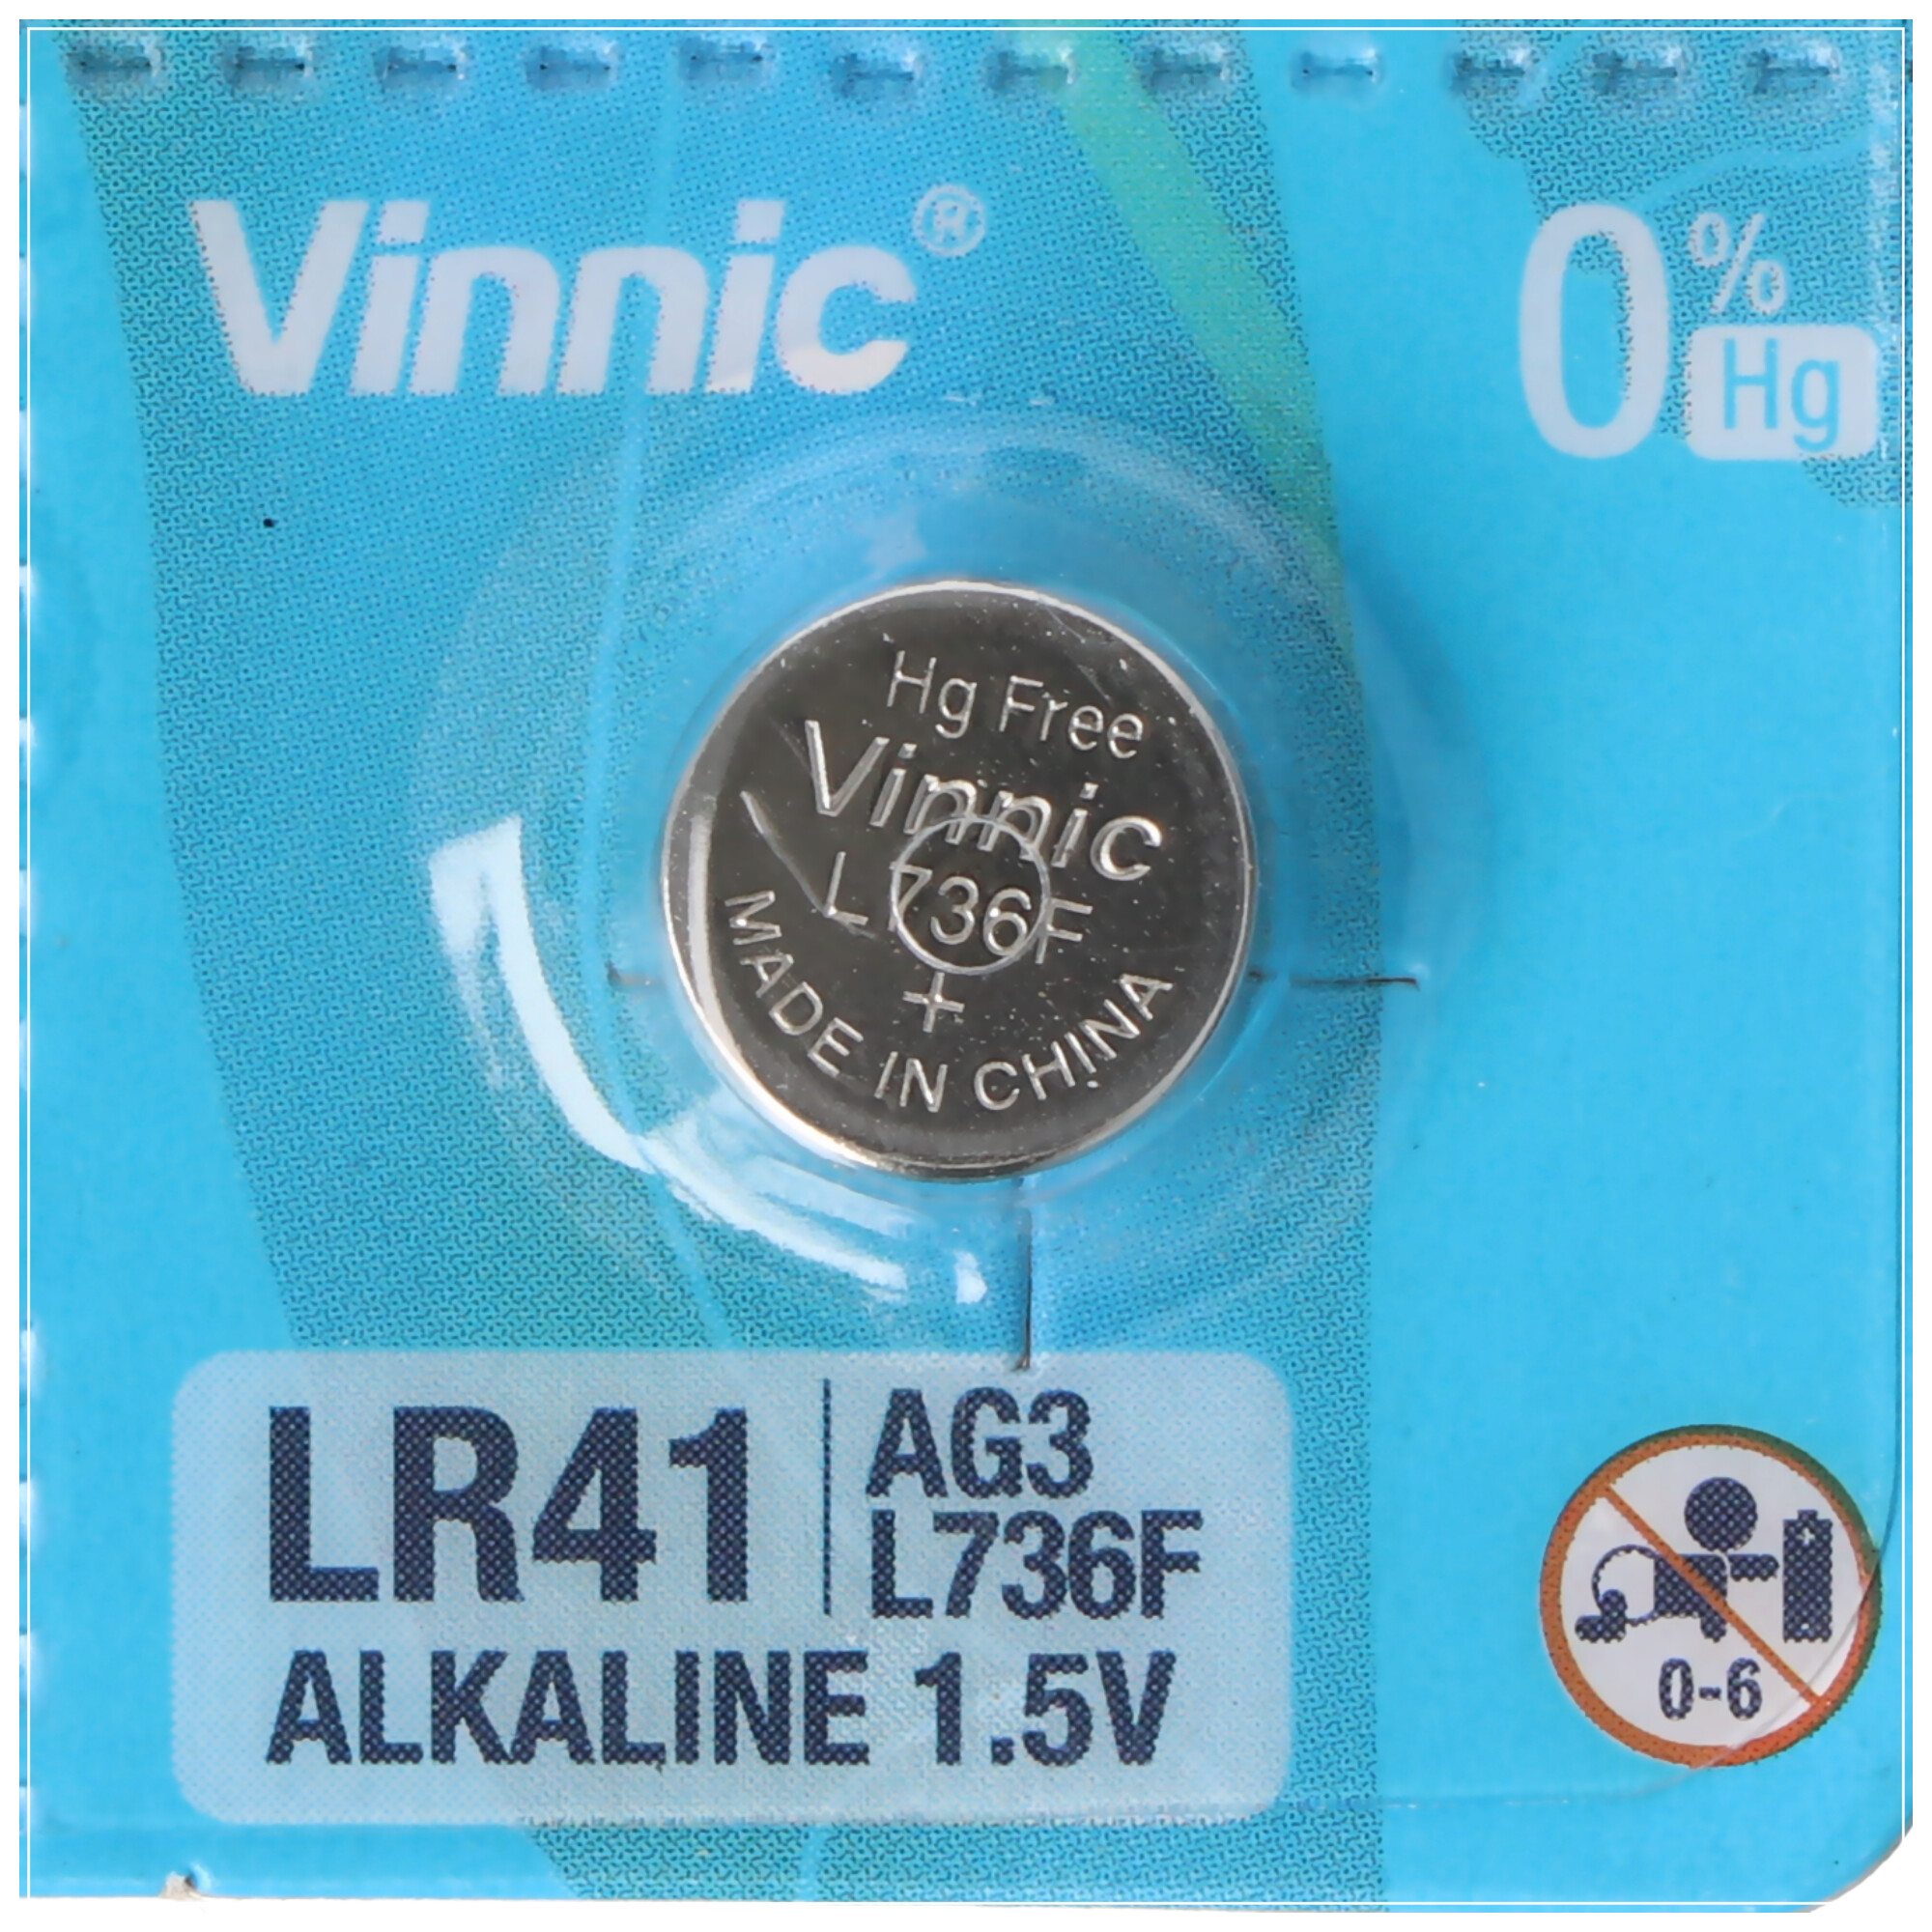 Lot de 30 piles bouton LR41 1,5 V AG3 LR736 L736F pour thermomètre  numérique, pointeur laser, mini montre plate